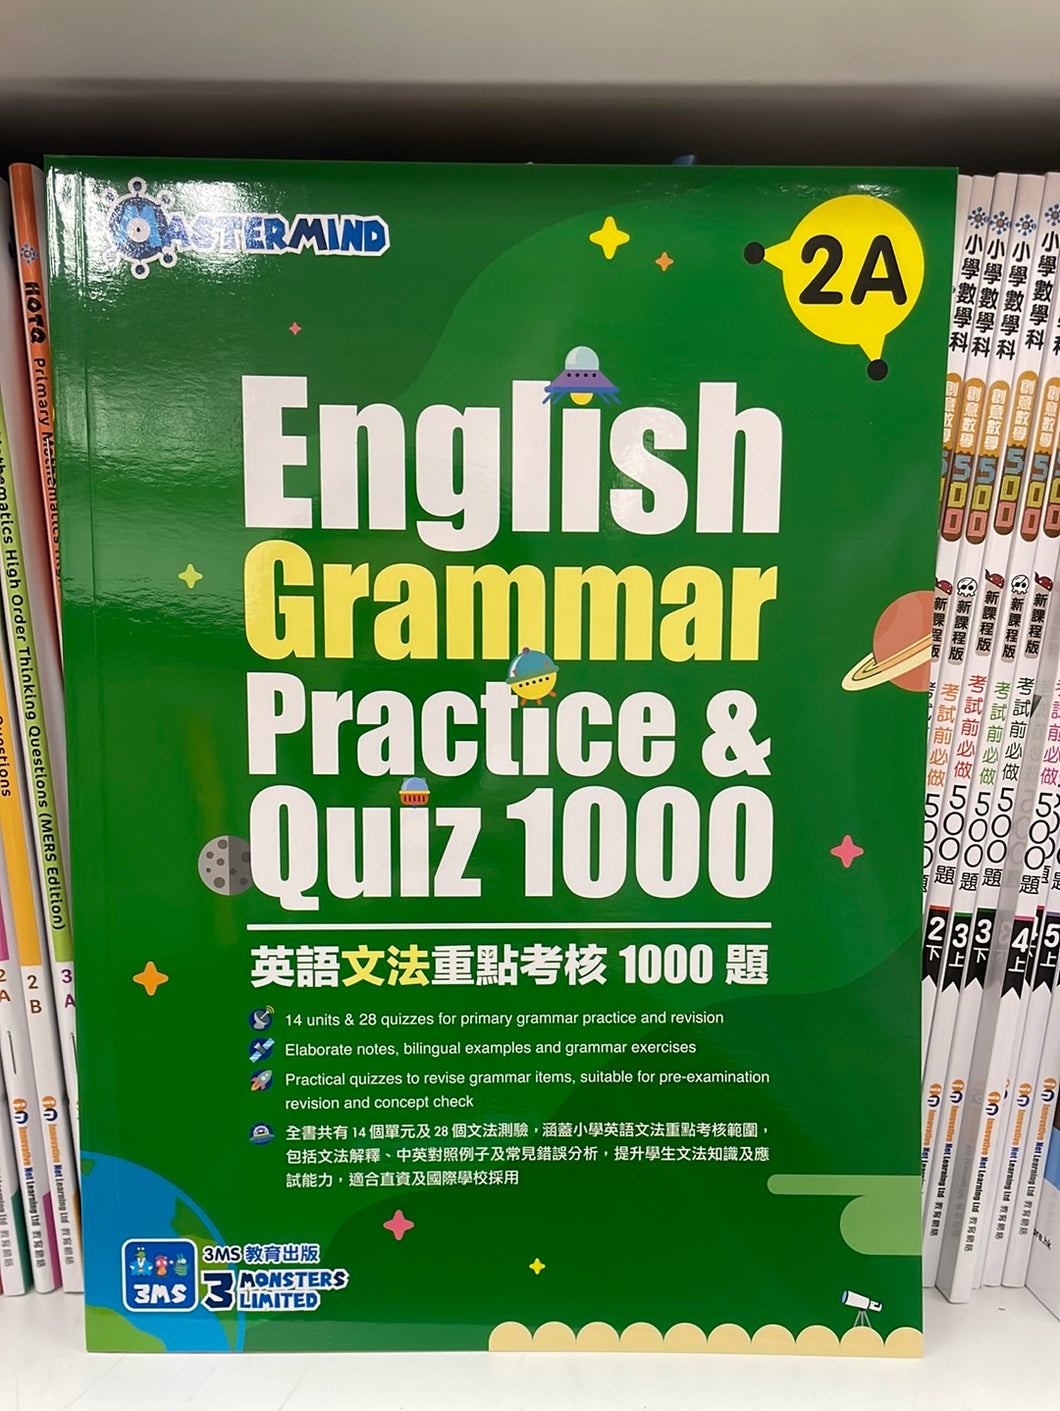 3MS English Grammar Practice & Quiz 1000 2A